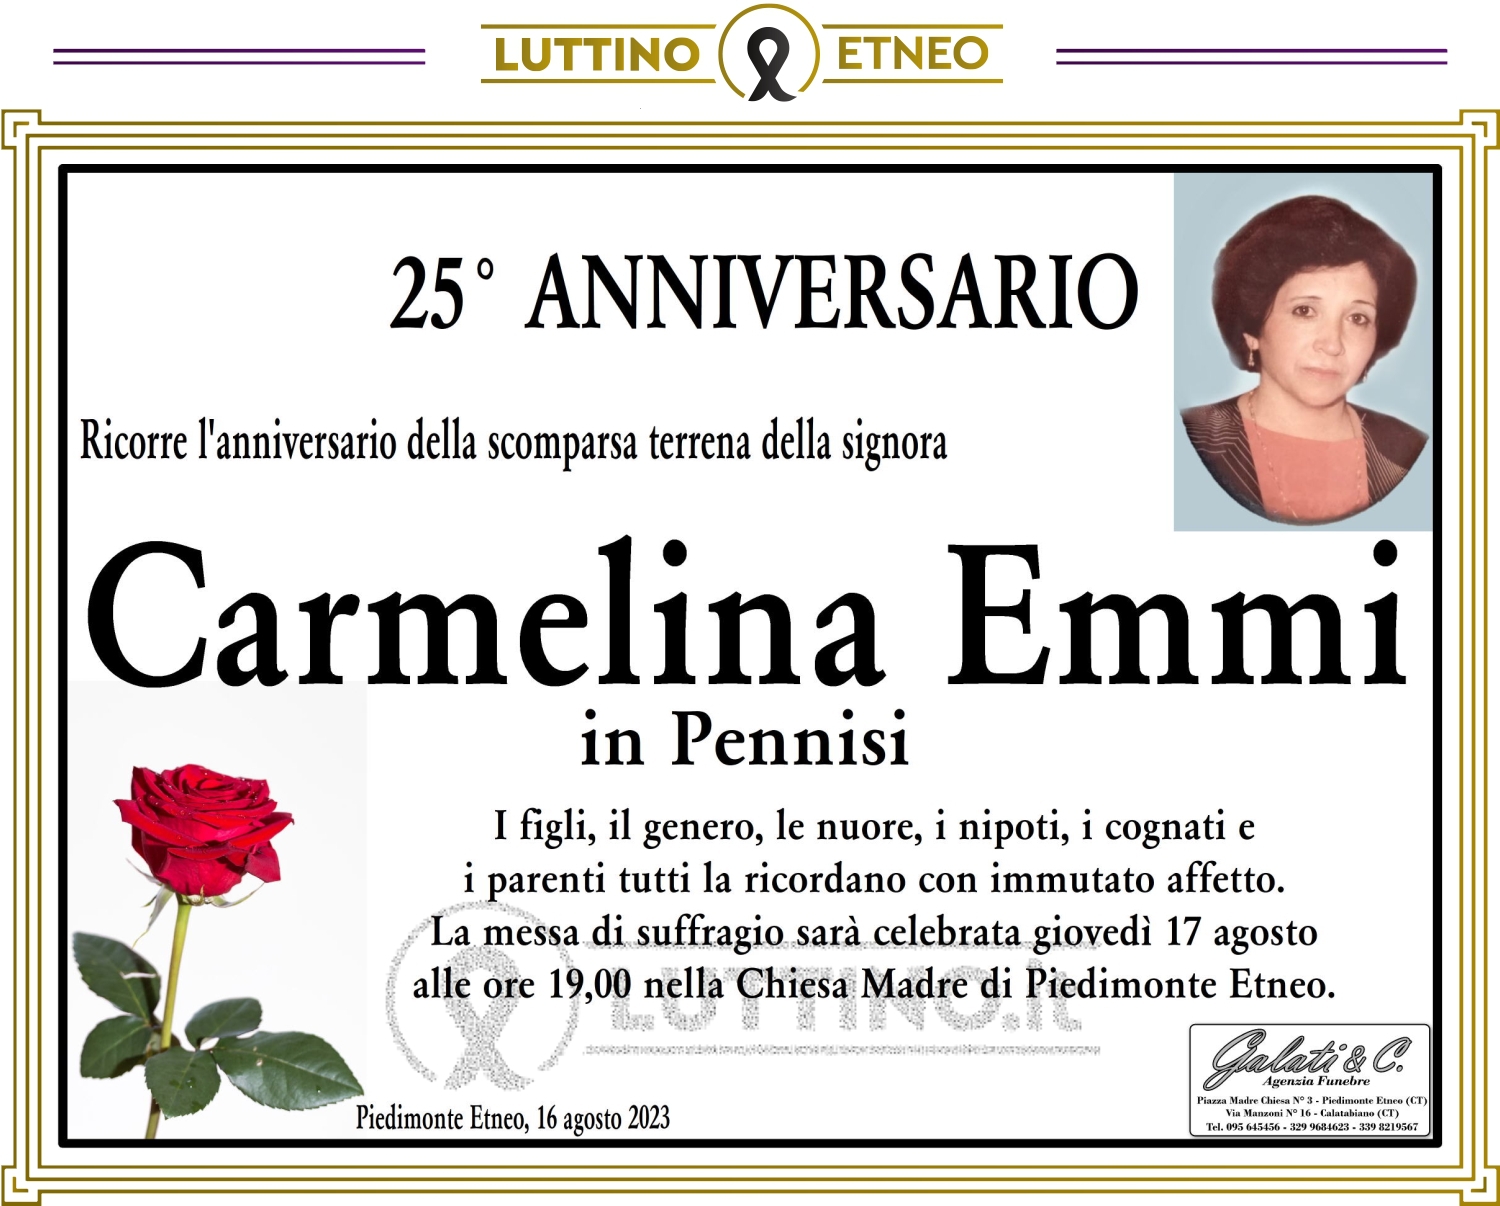 Carmelina Emmi